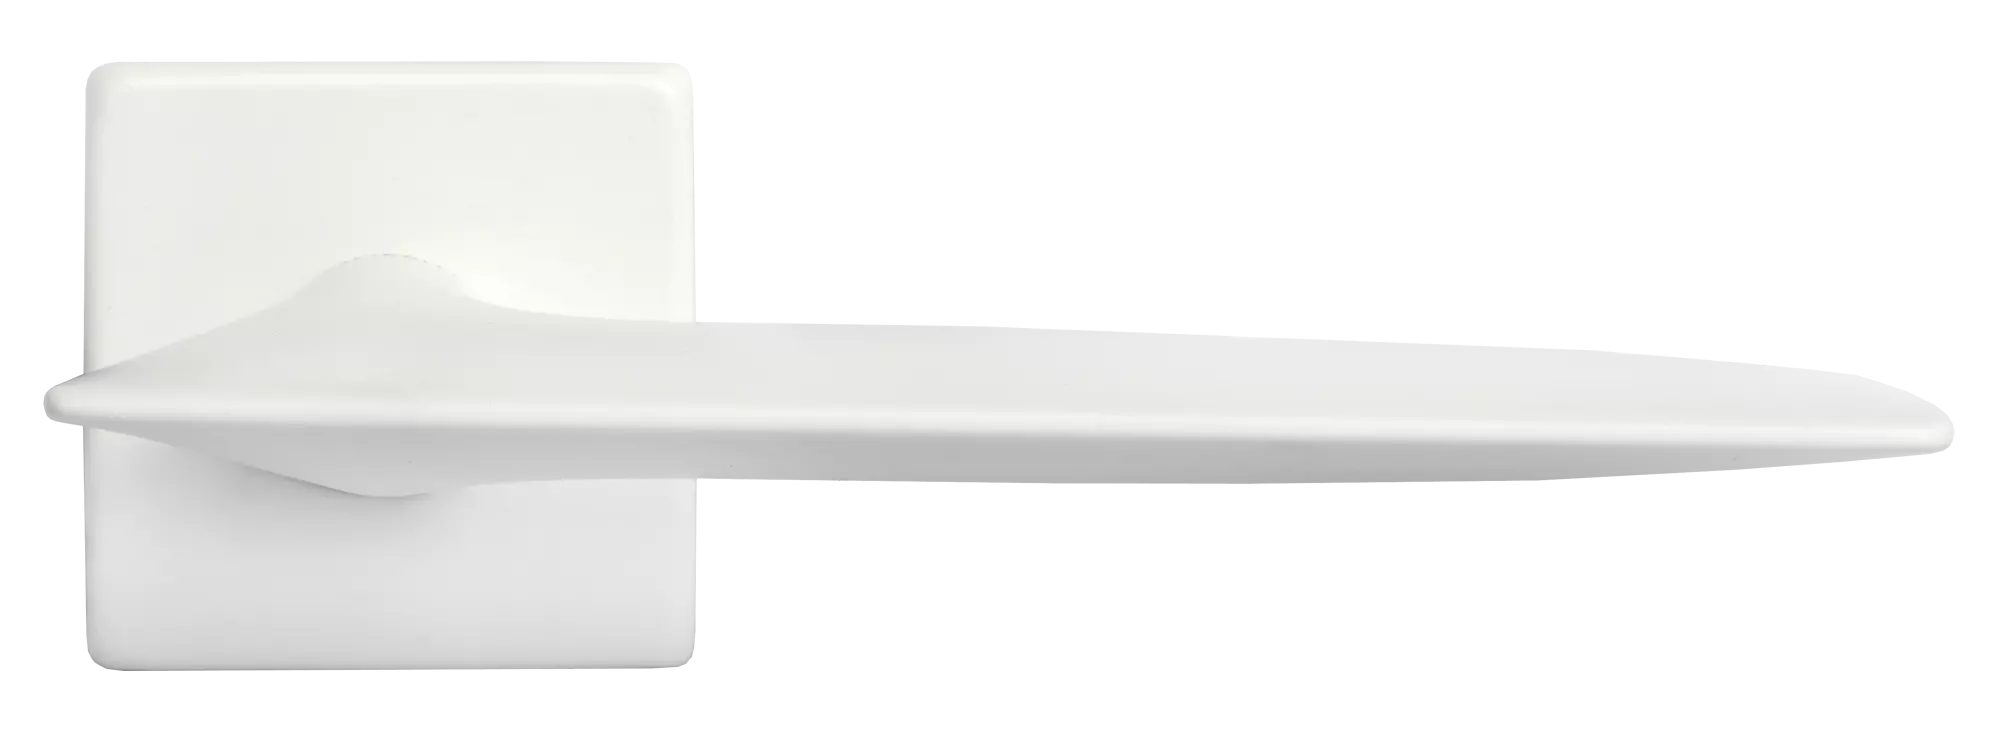 GALACTIC S5 BIA, ручка дверная, цвет - белый фото купить в Саратове